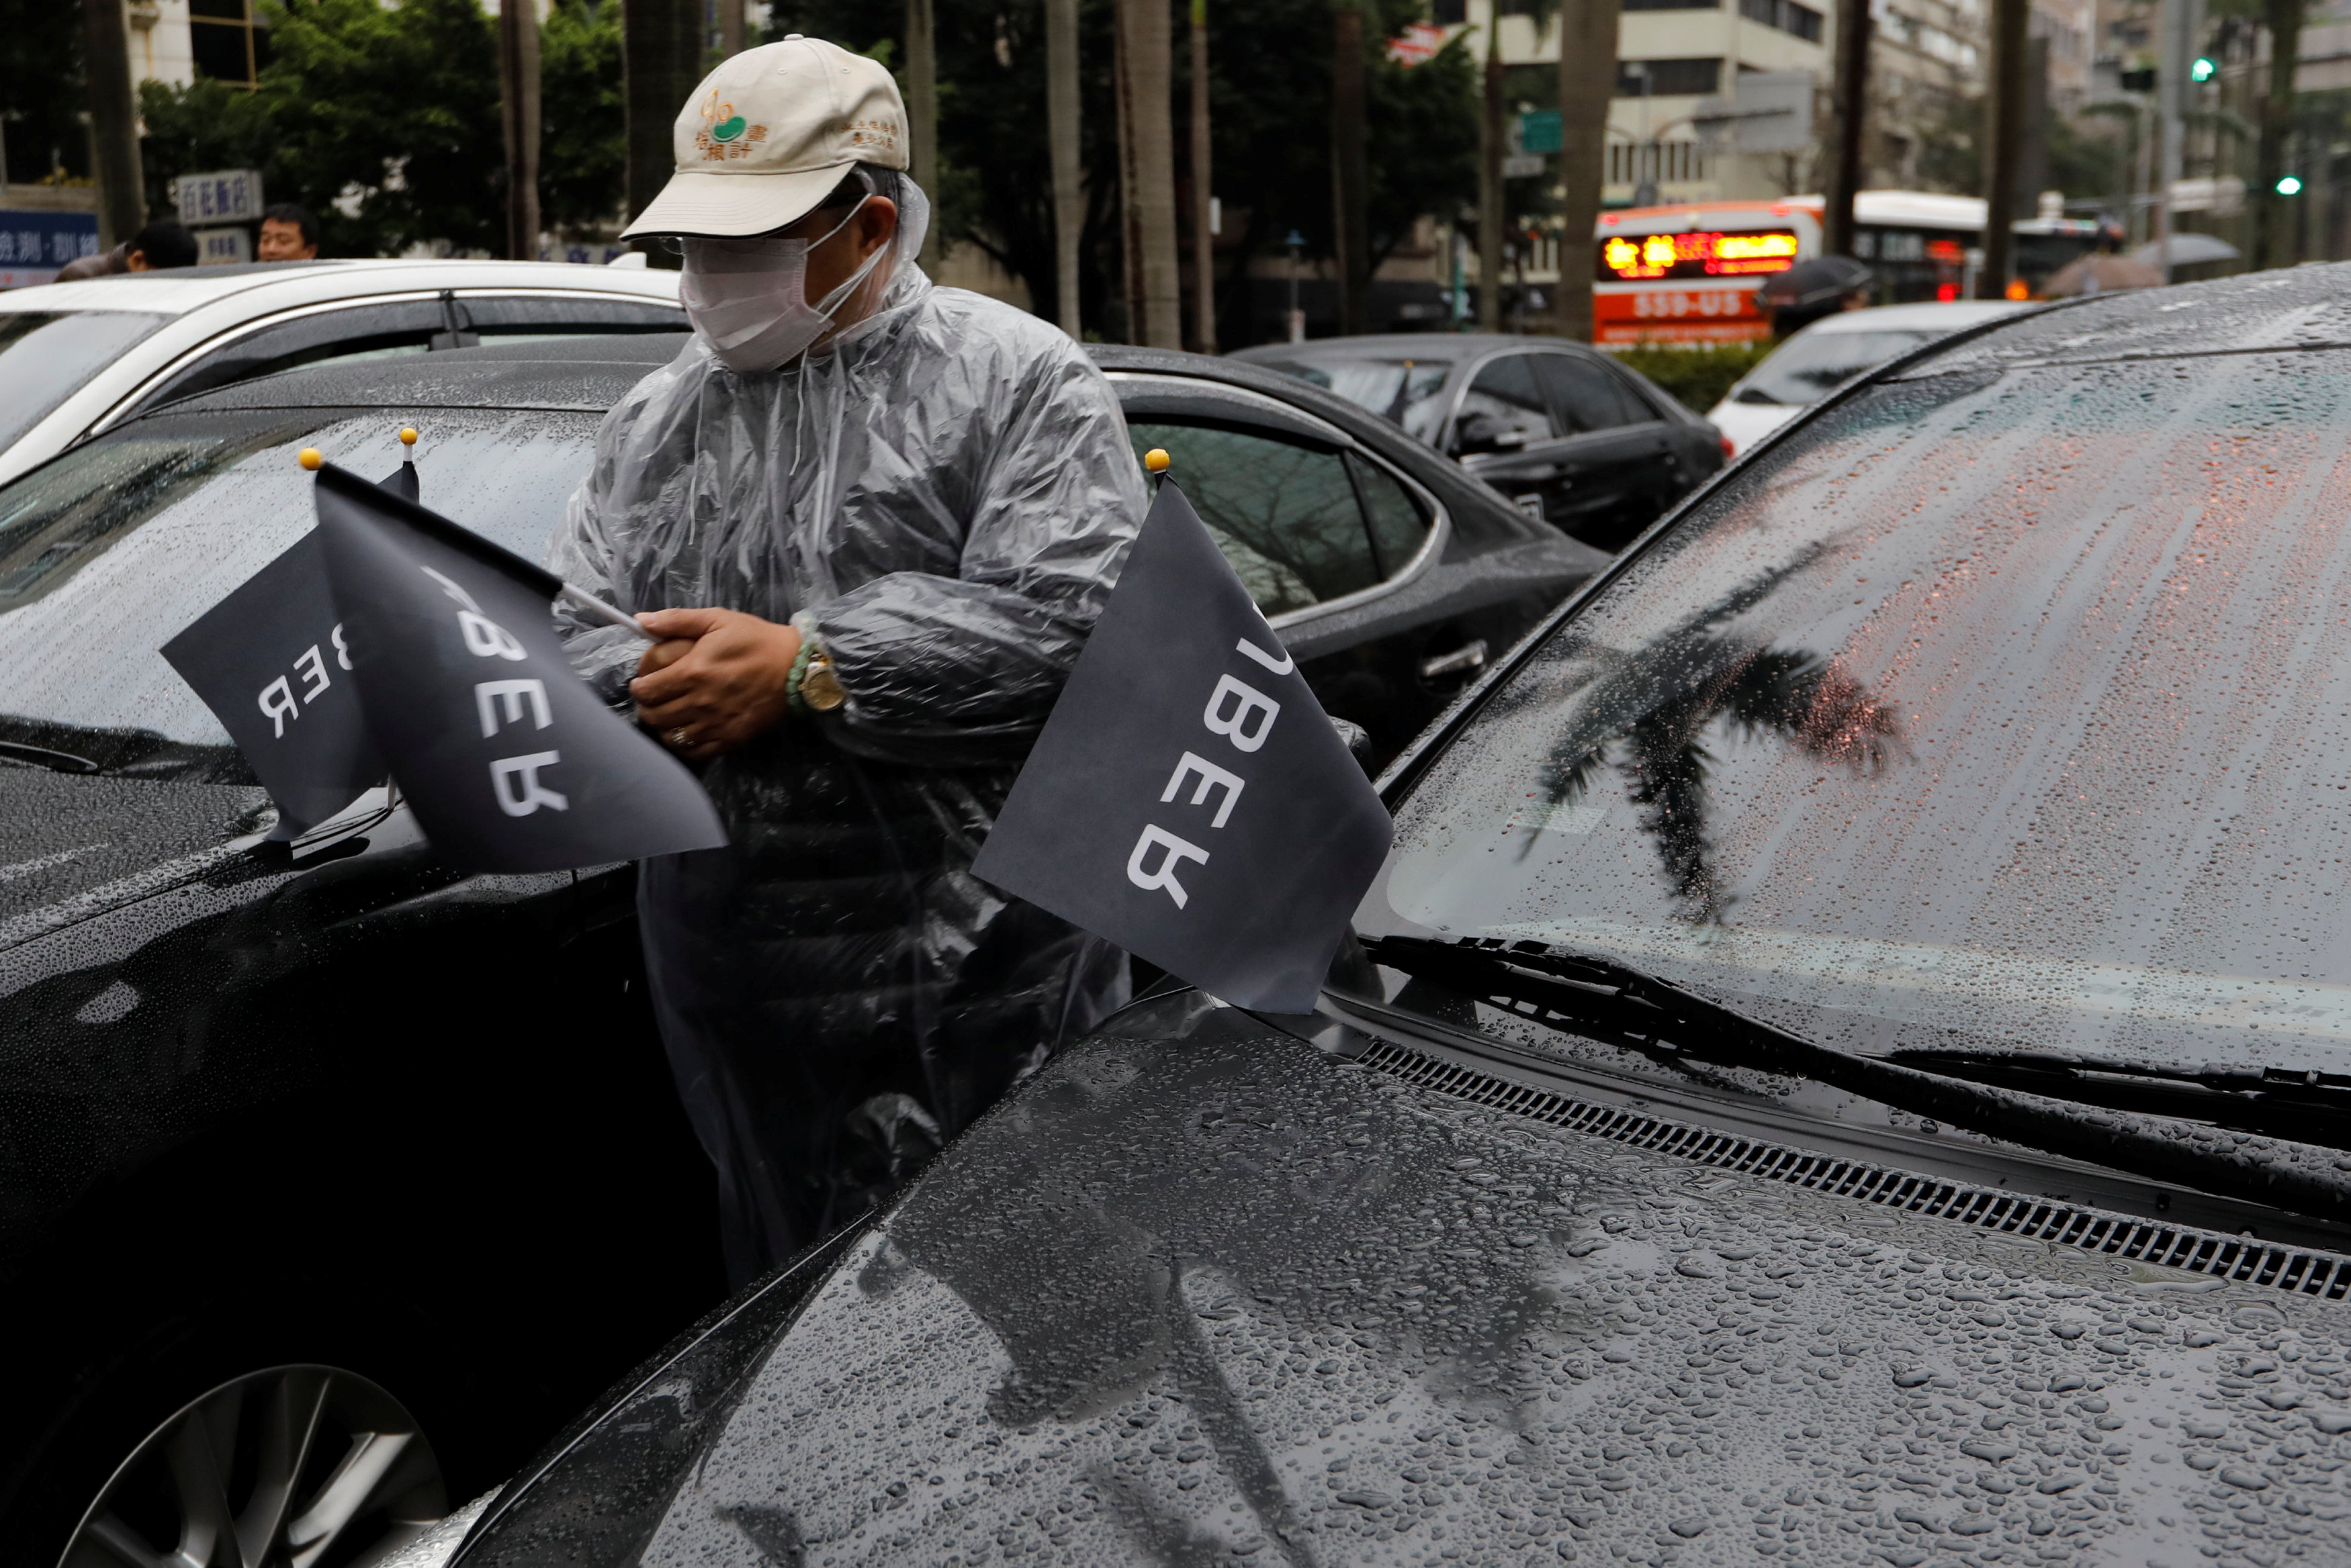 سائق أوبر يعلق أعلام بشعار الشركة على السيارات خلال المظاهرة فى تايوان